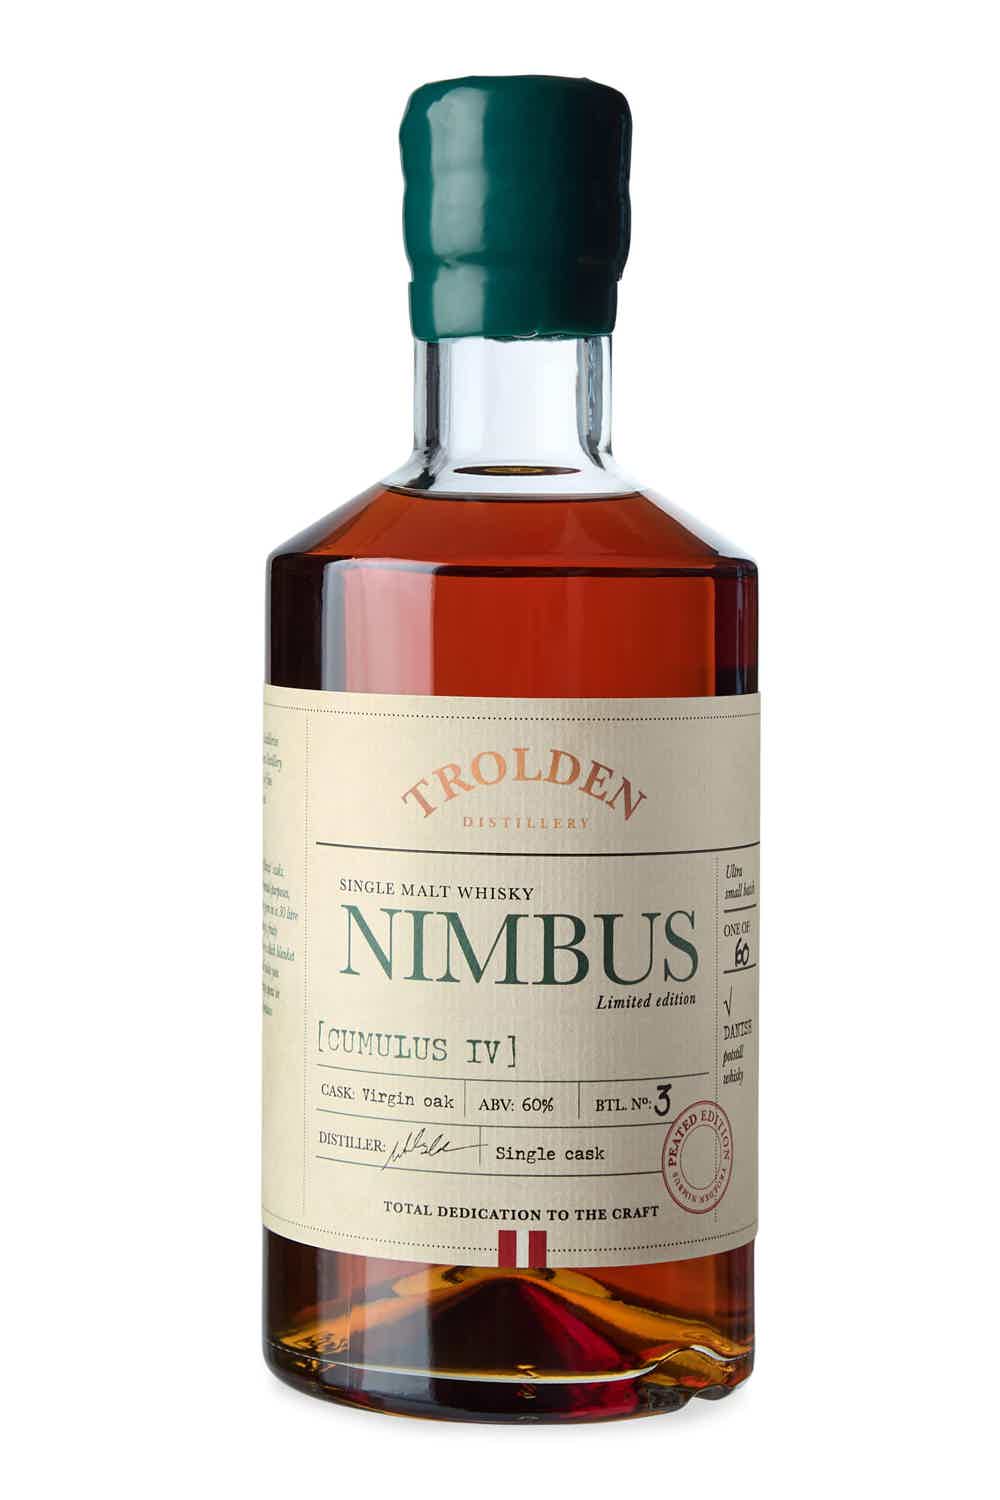 NIMBUS Cumulus IV